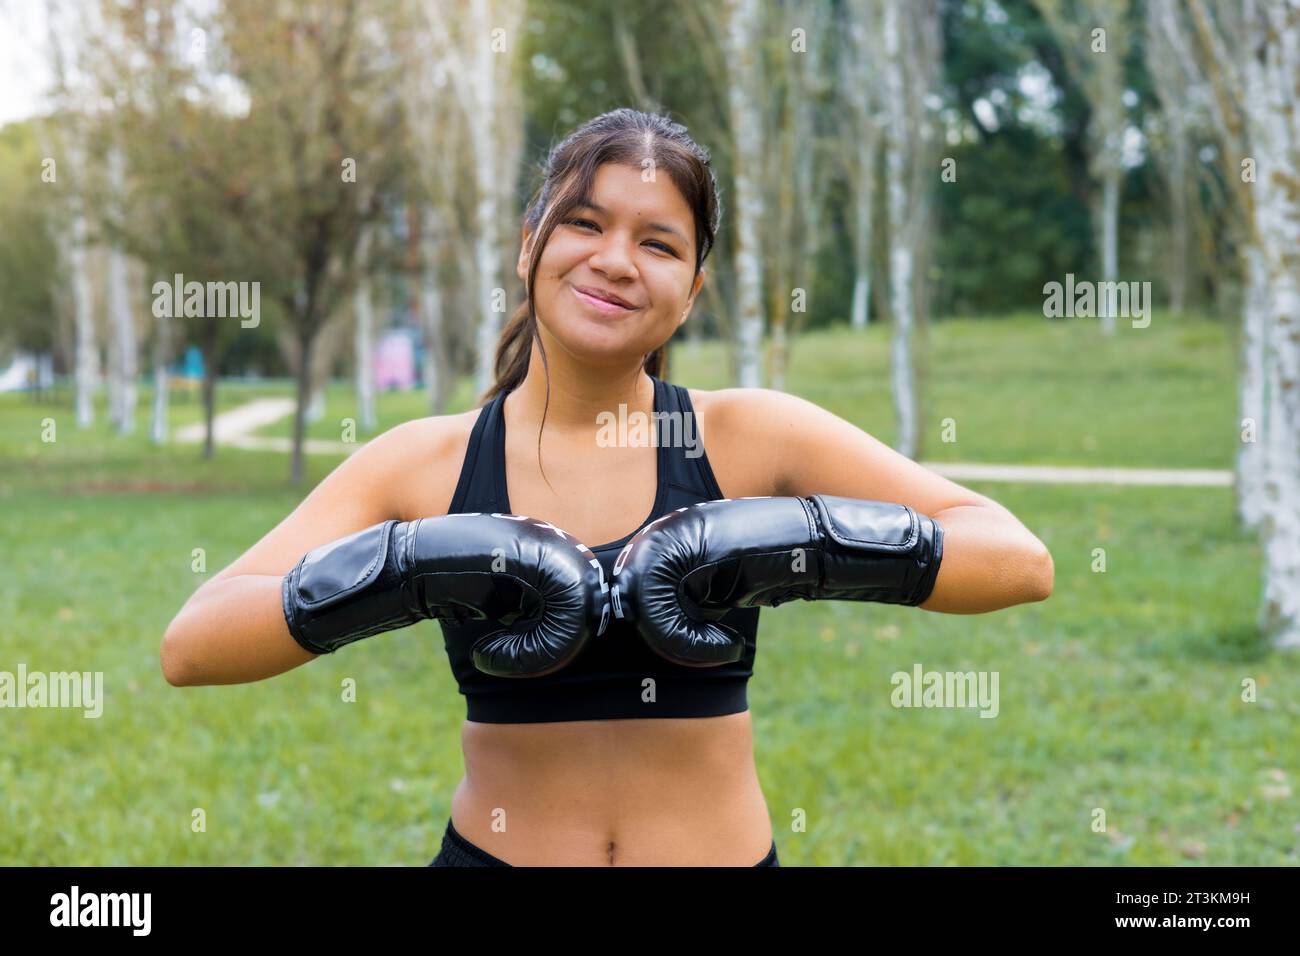 Junge lateinboxerin, die Boxhandschuhe in einem Outdoor-Sparringtraining anzieht Stockfoto